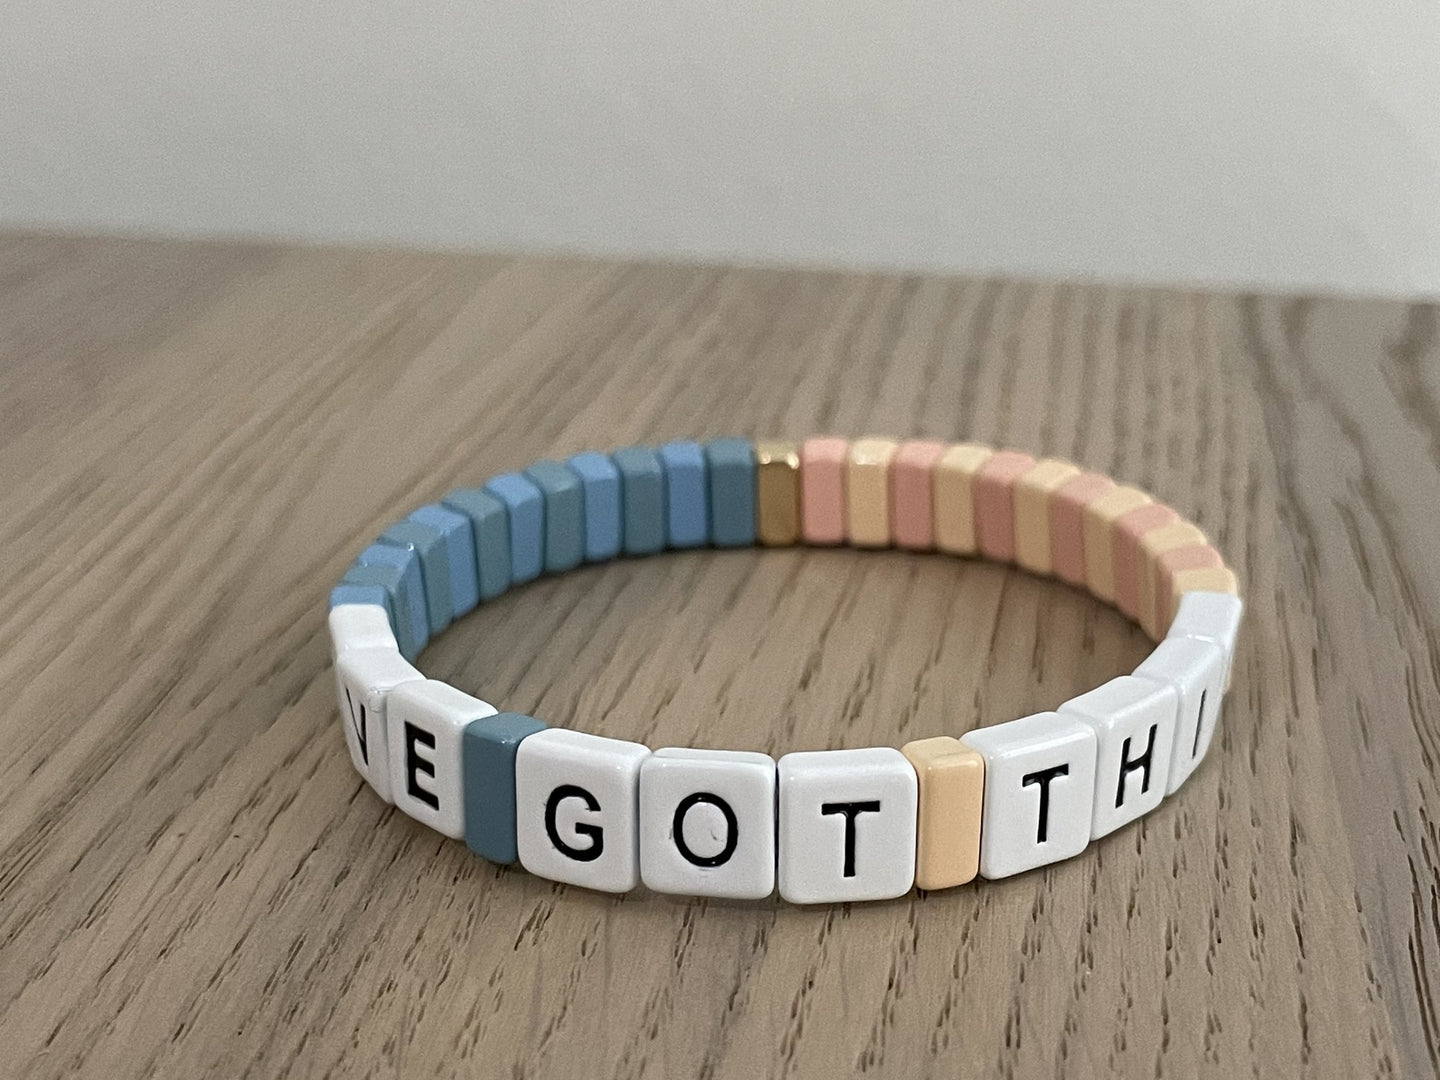 I’ve got this bracelet